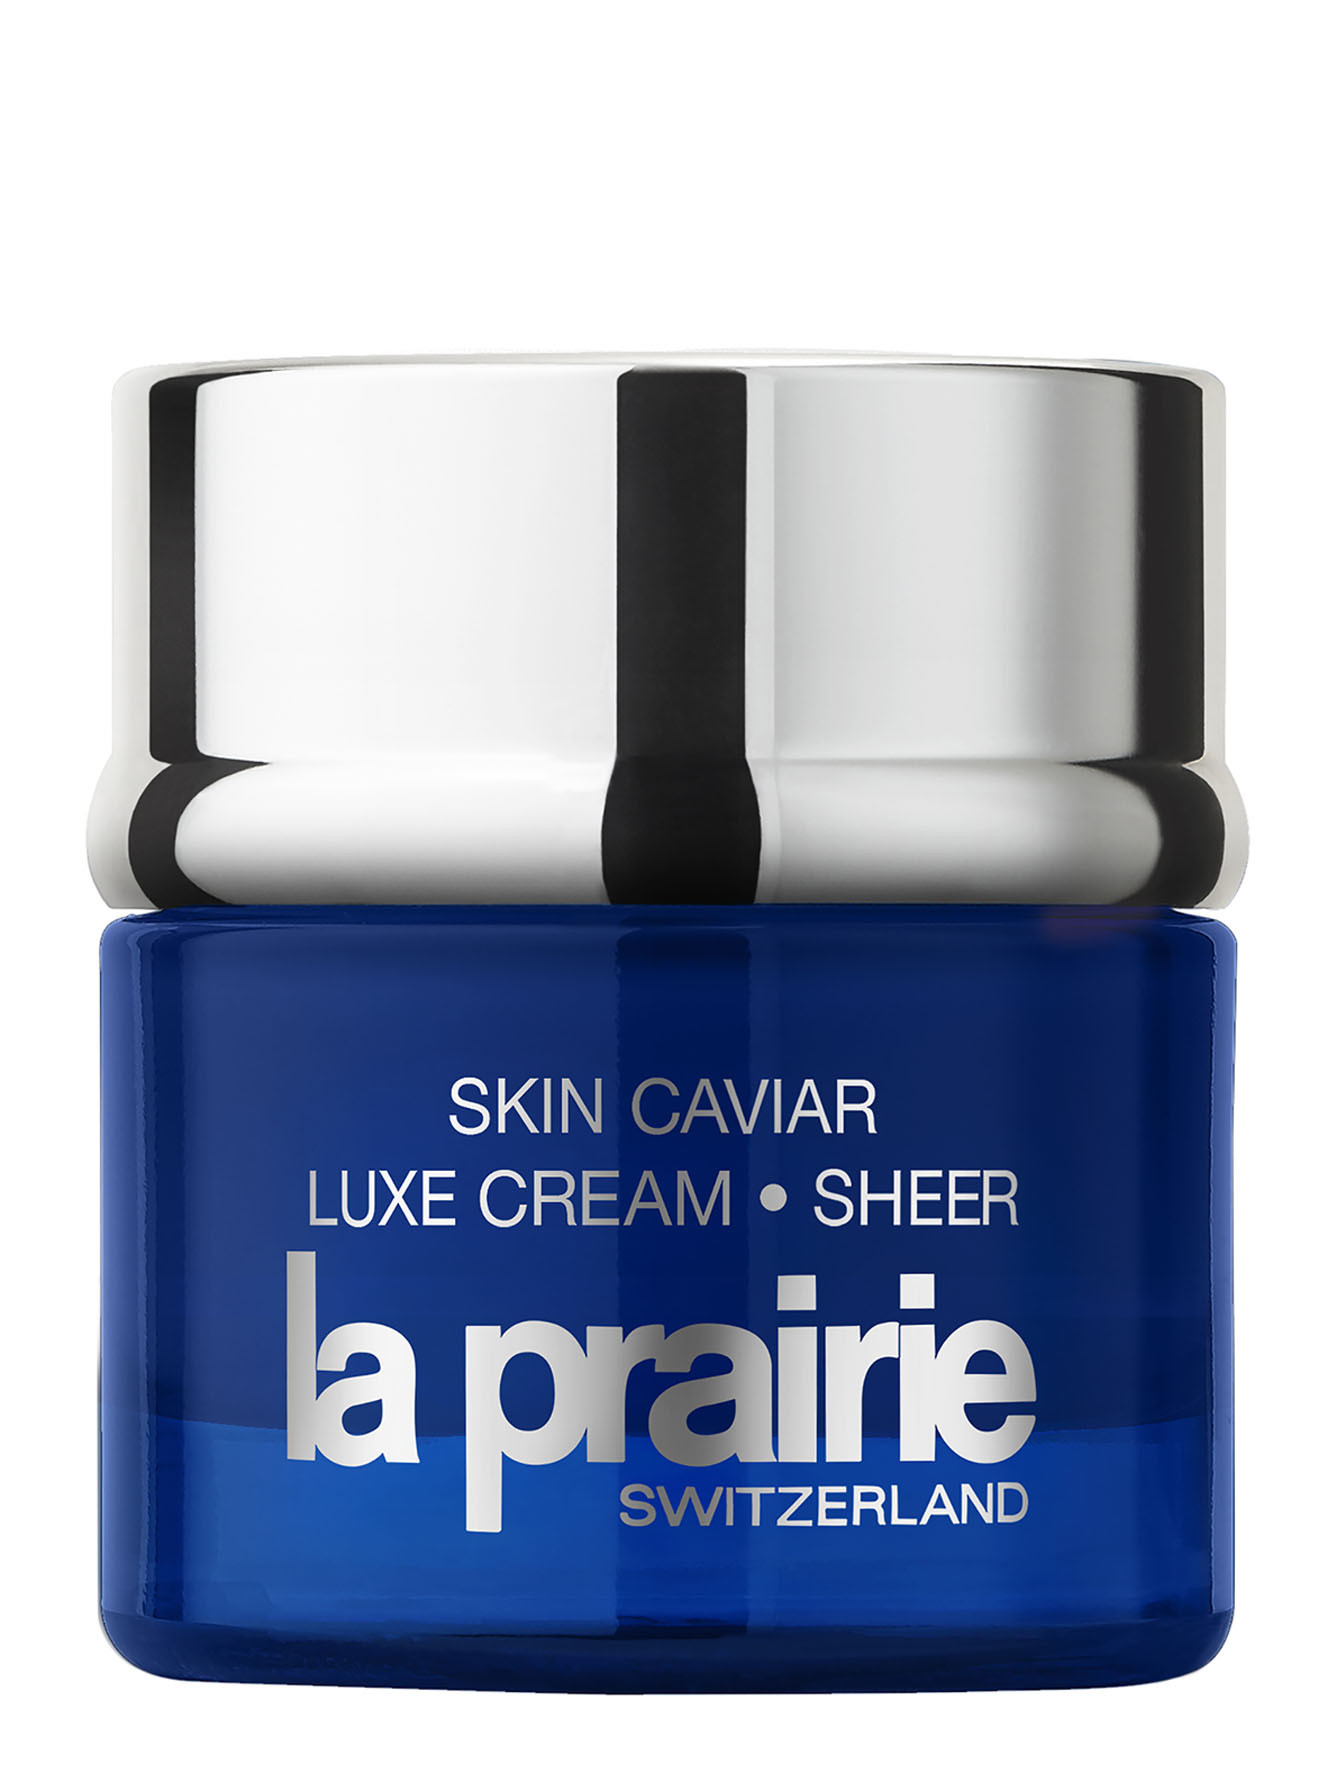 Легкий подтягивающий и укрепляющий крем Skin Caviar Luxe Cream, 50 мл - Общий вид